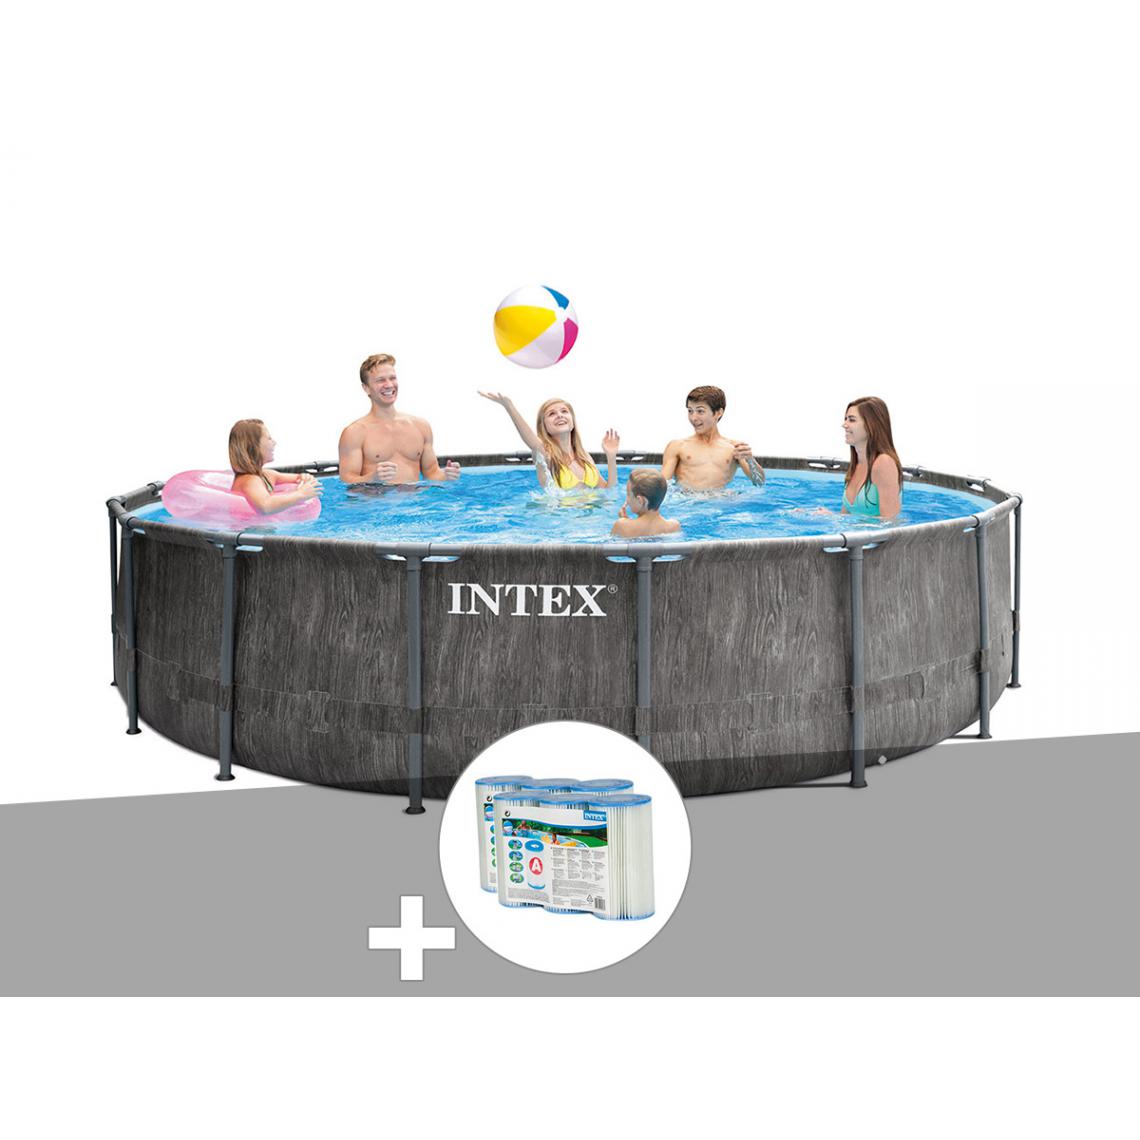 Intex - Kit piscine tubulaire Intex Baltik ronde 5,49 x 1,22 m + 6 cartouches de filtration - Piscine Tubulaire